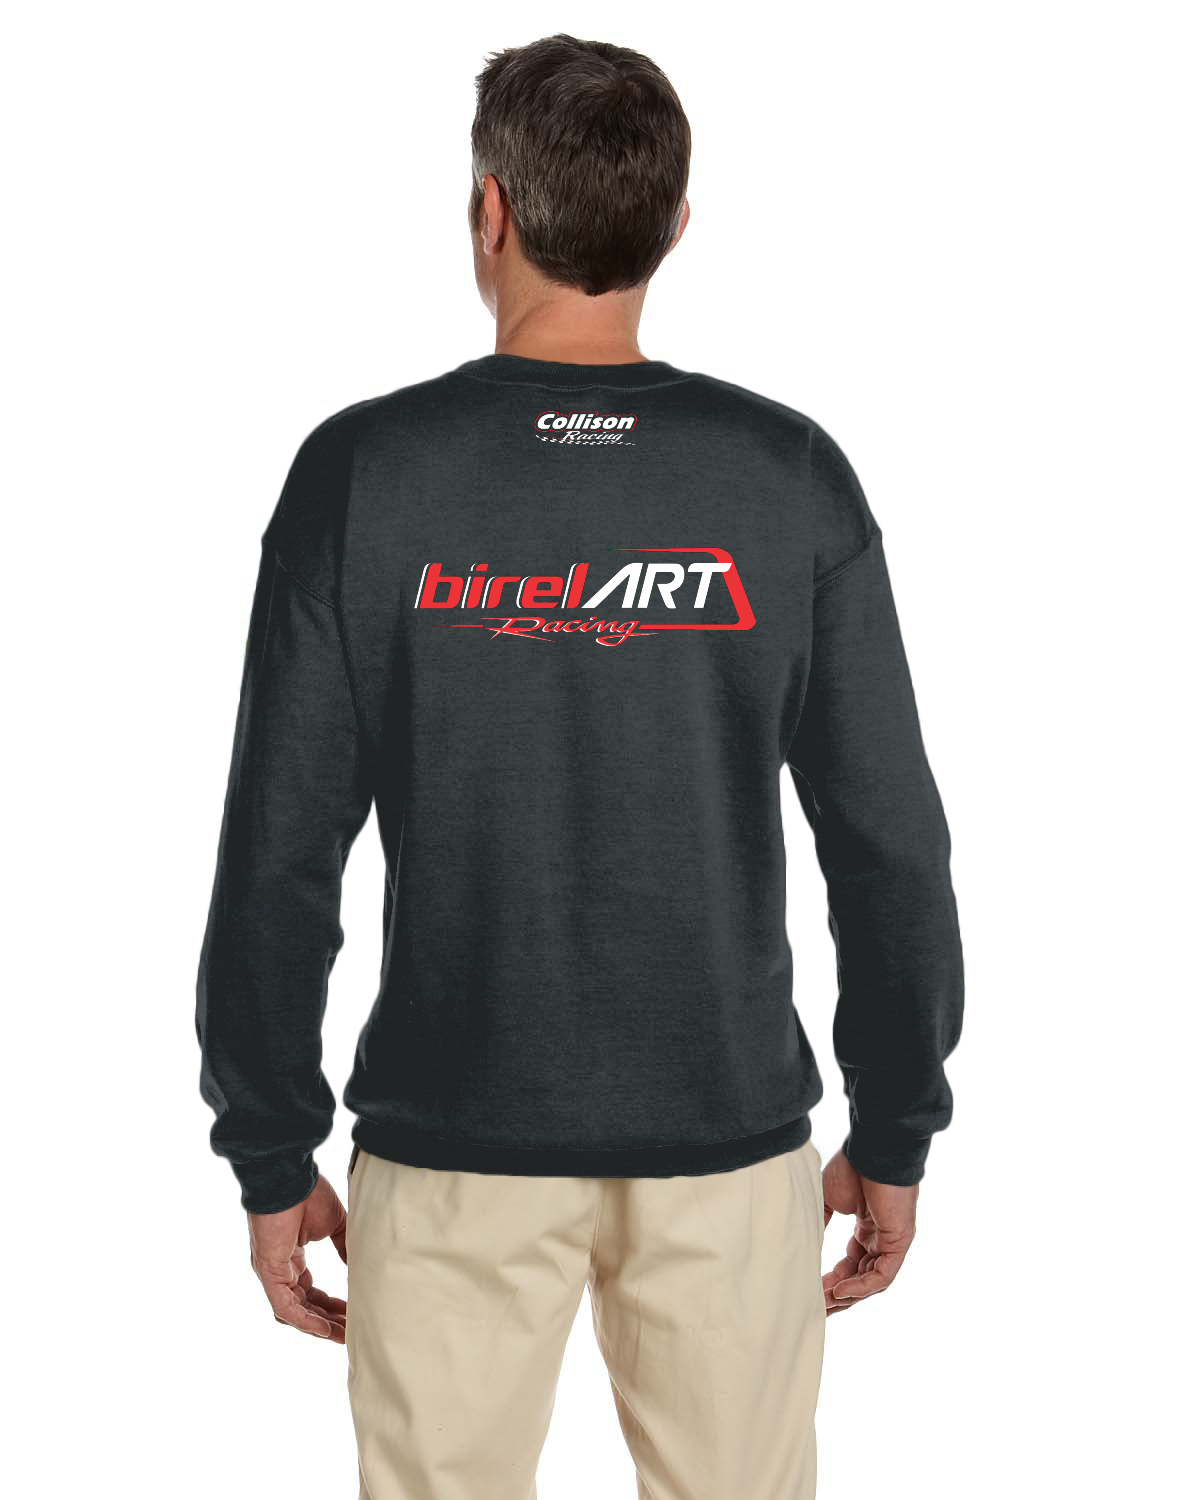 Birel Art Racing Adult crew neck sweater